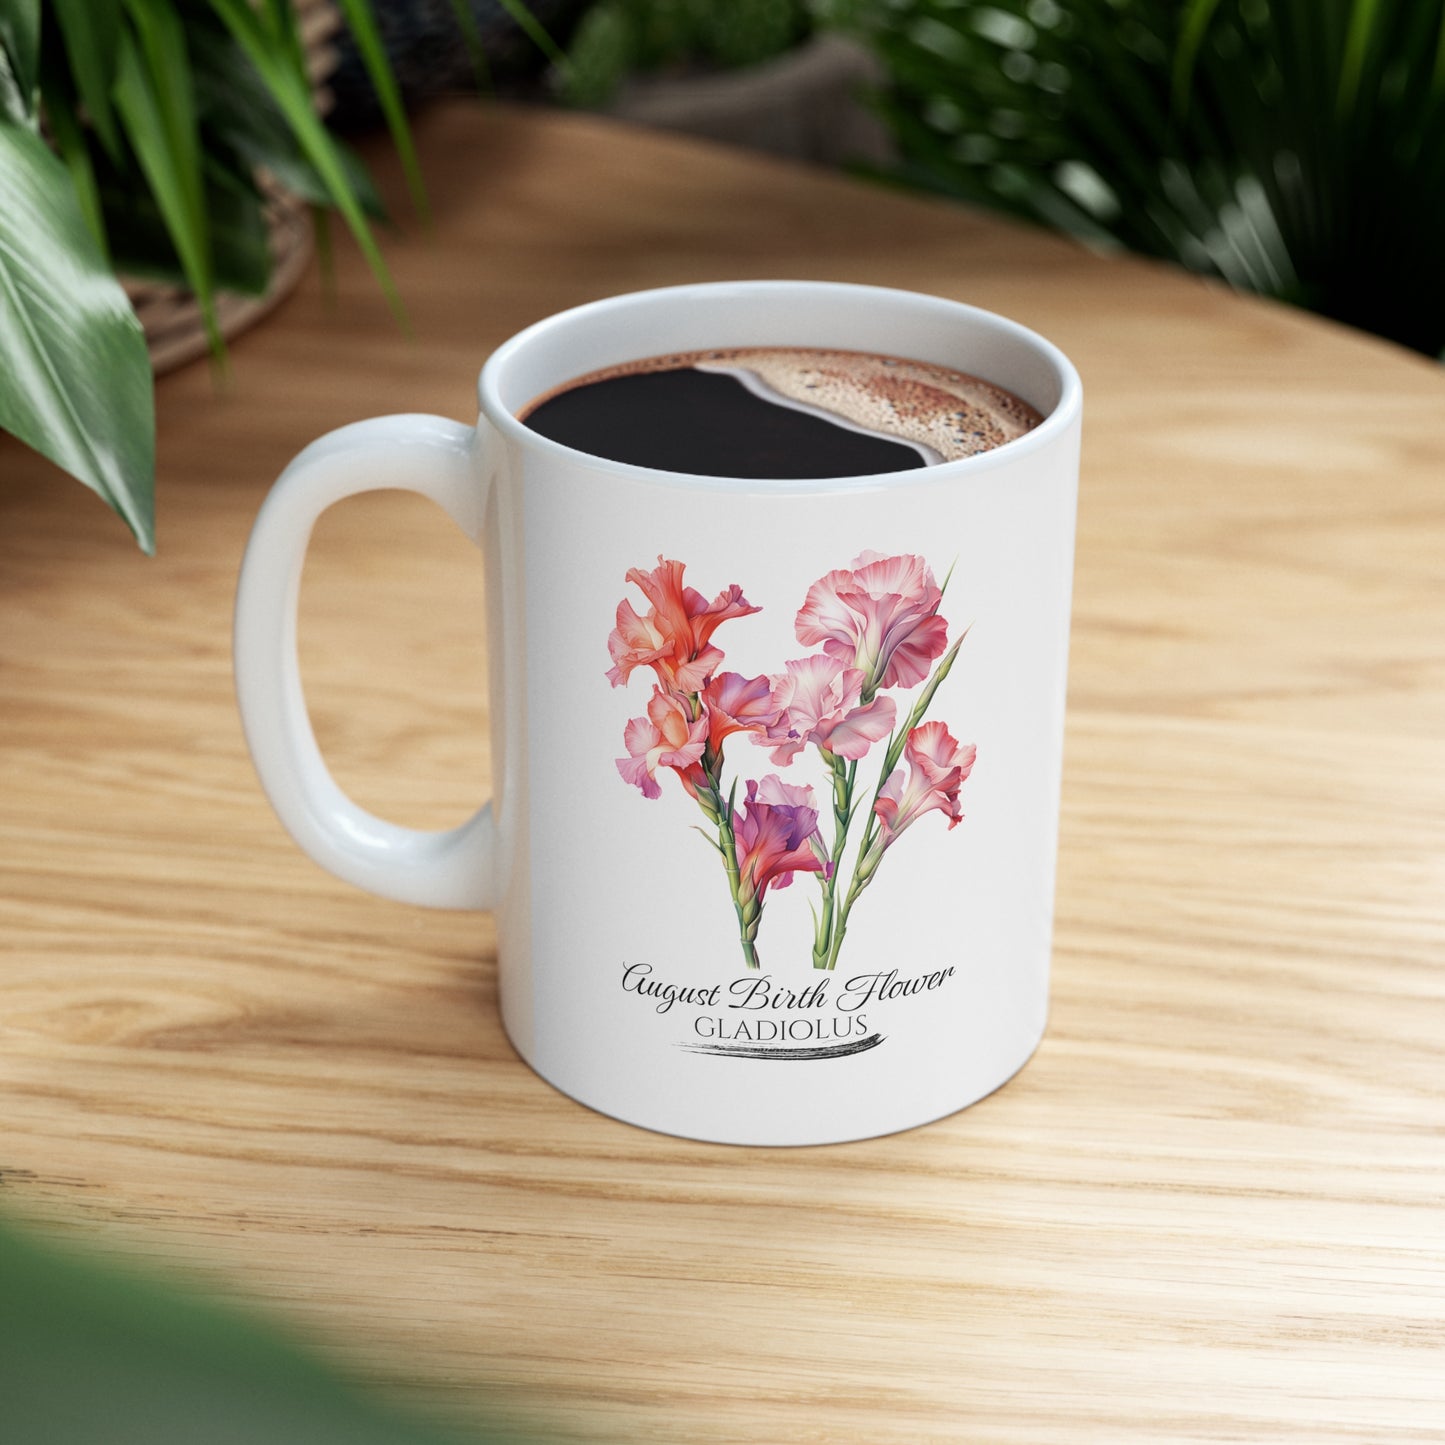 August Birth Flower (Gladiolus): Ceramic Mug 11oz